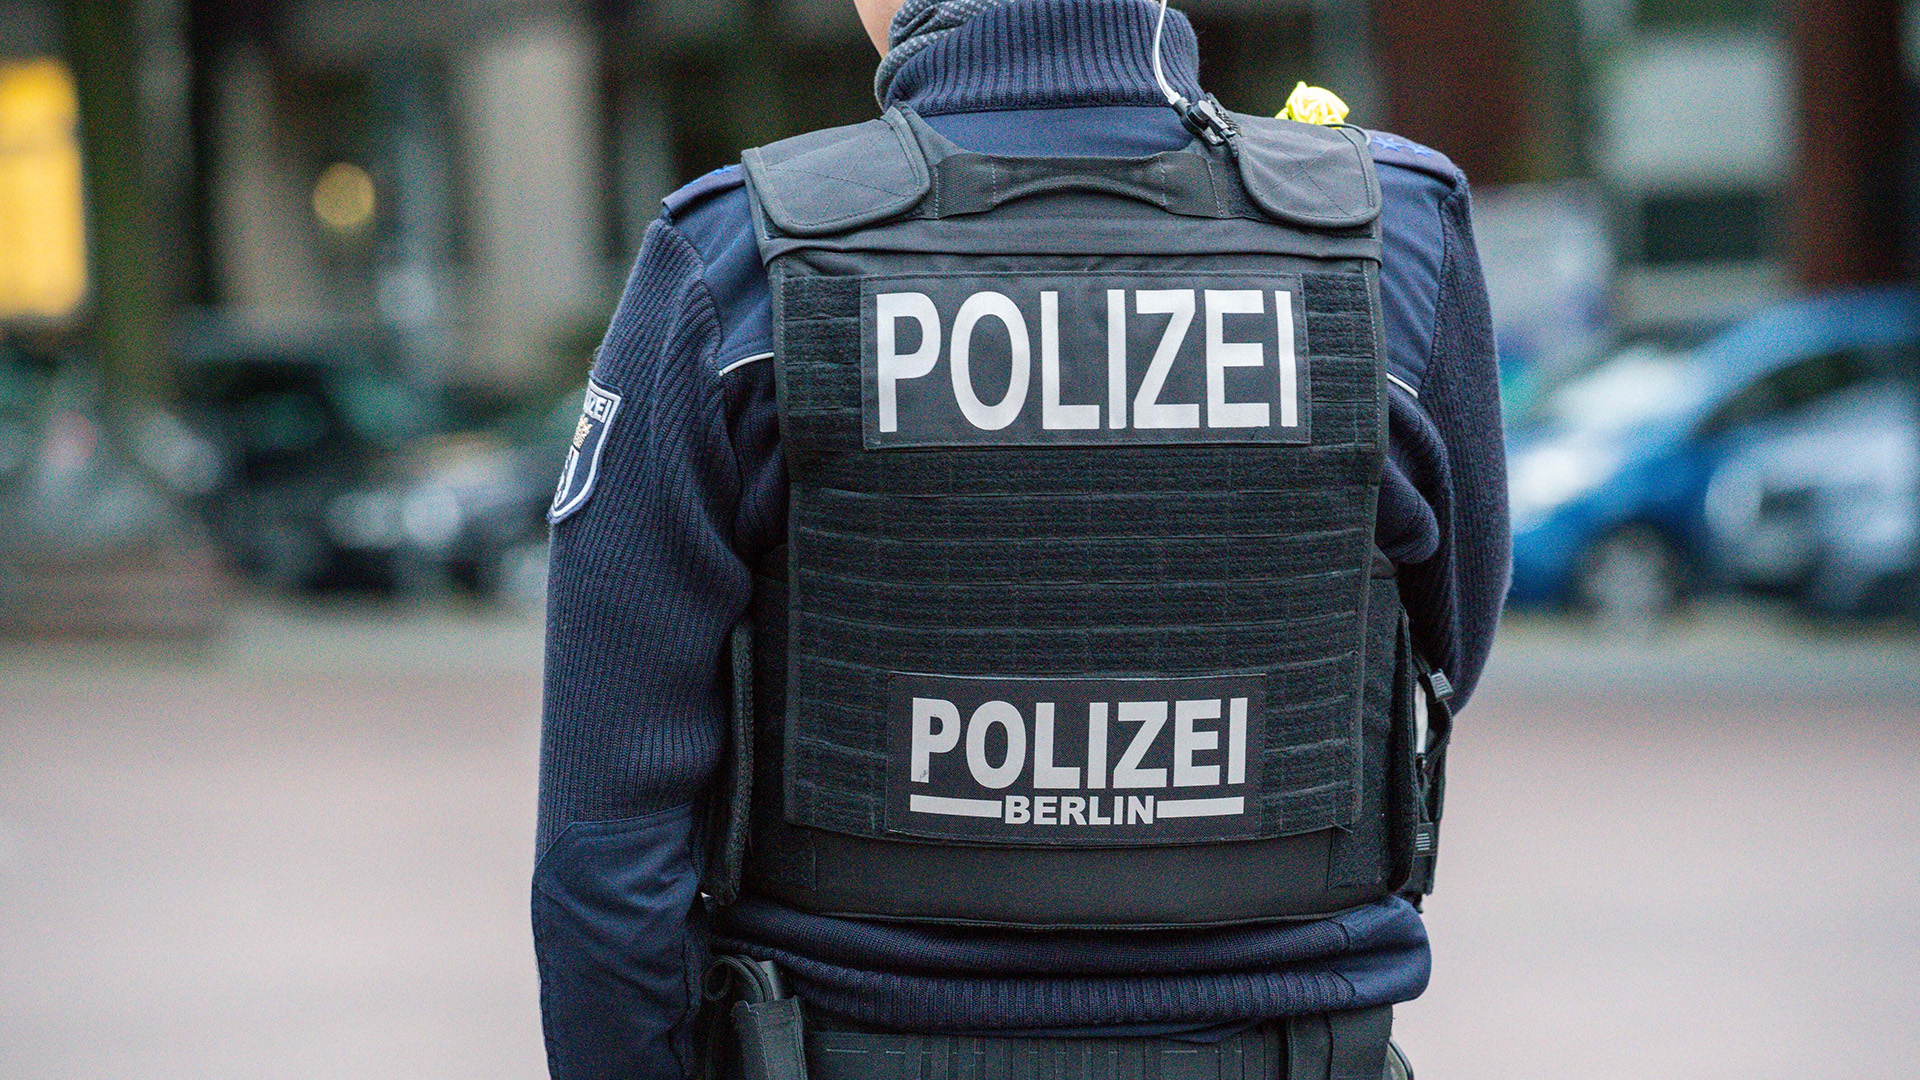 Symbolbild: Ein Berliner Polizeibeamter, aufgenommen am 01.09.2020. (Quelle: Picture Alliance/Fotostand/Reuhl)